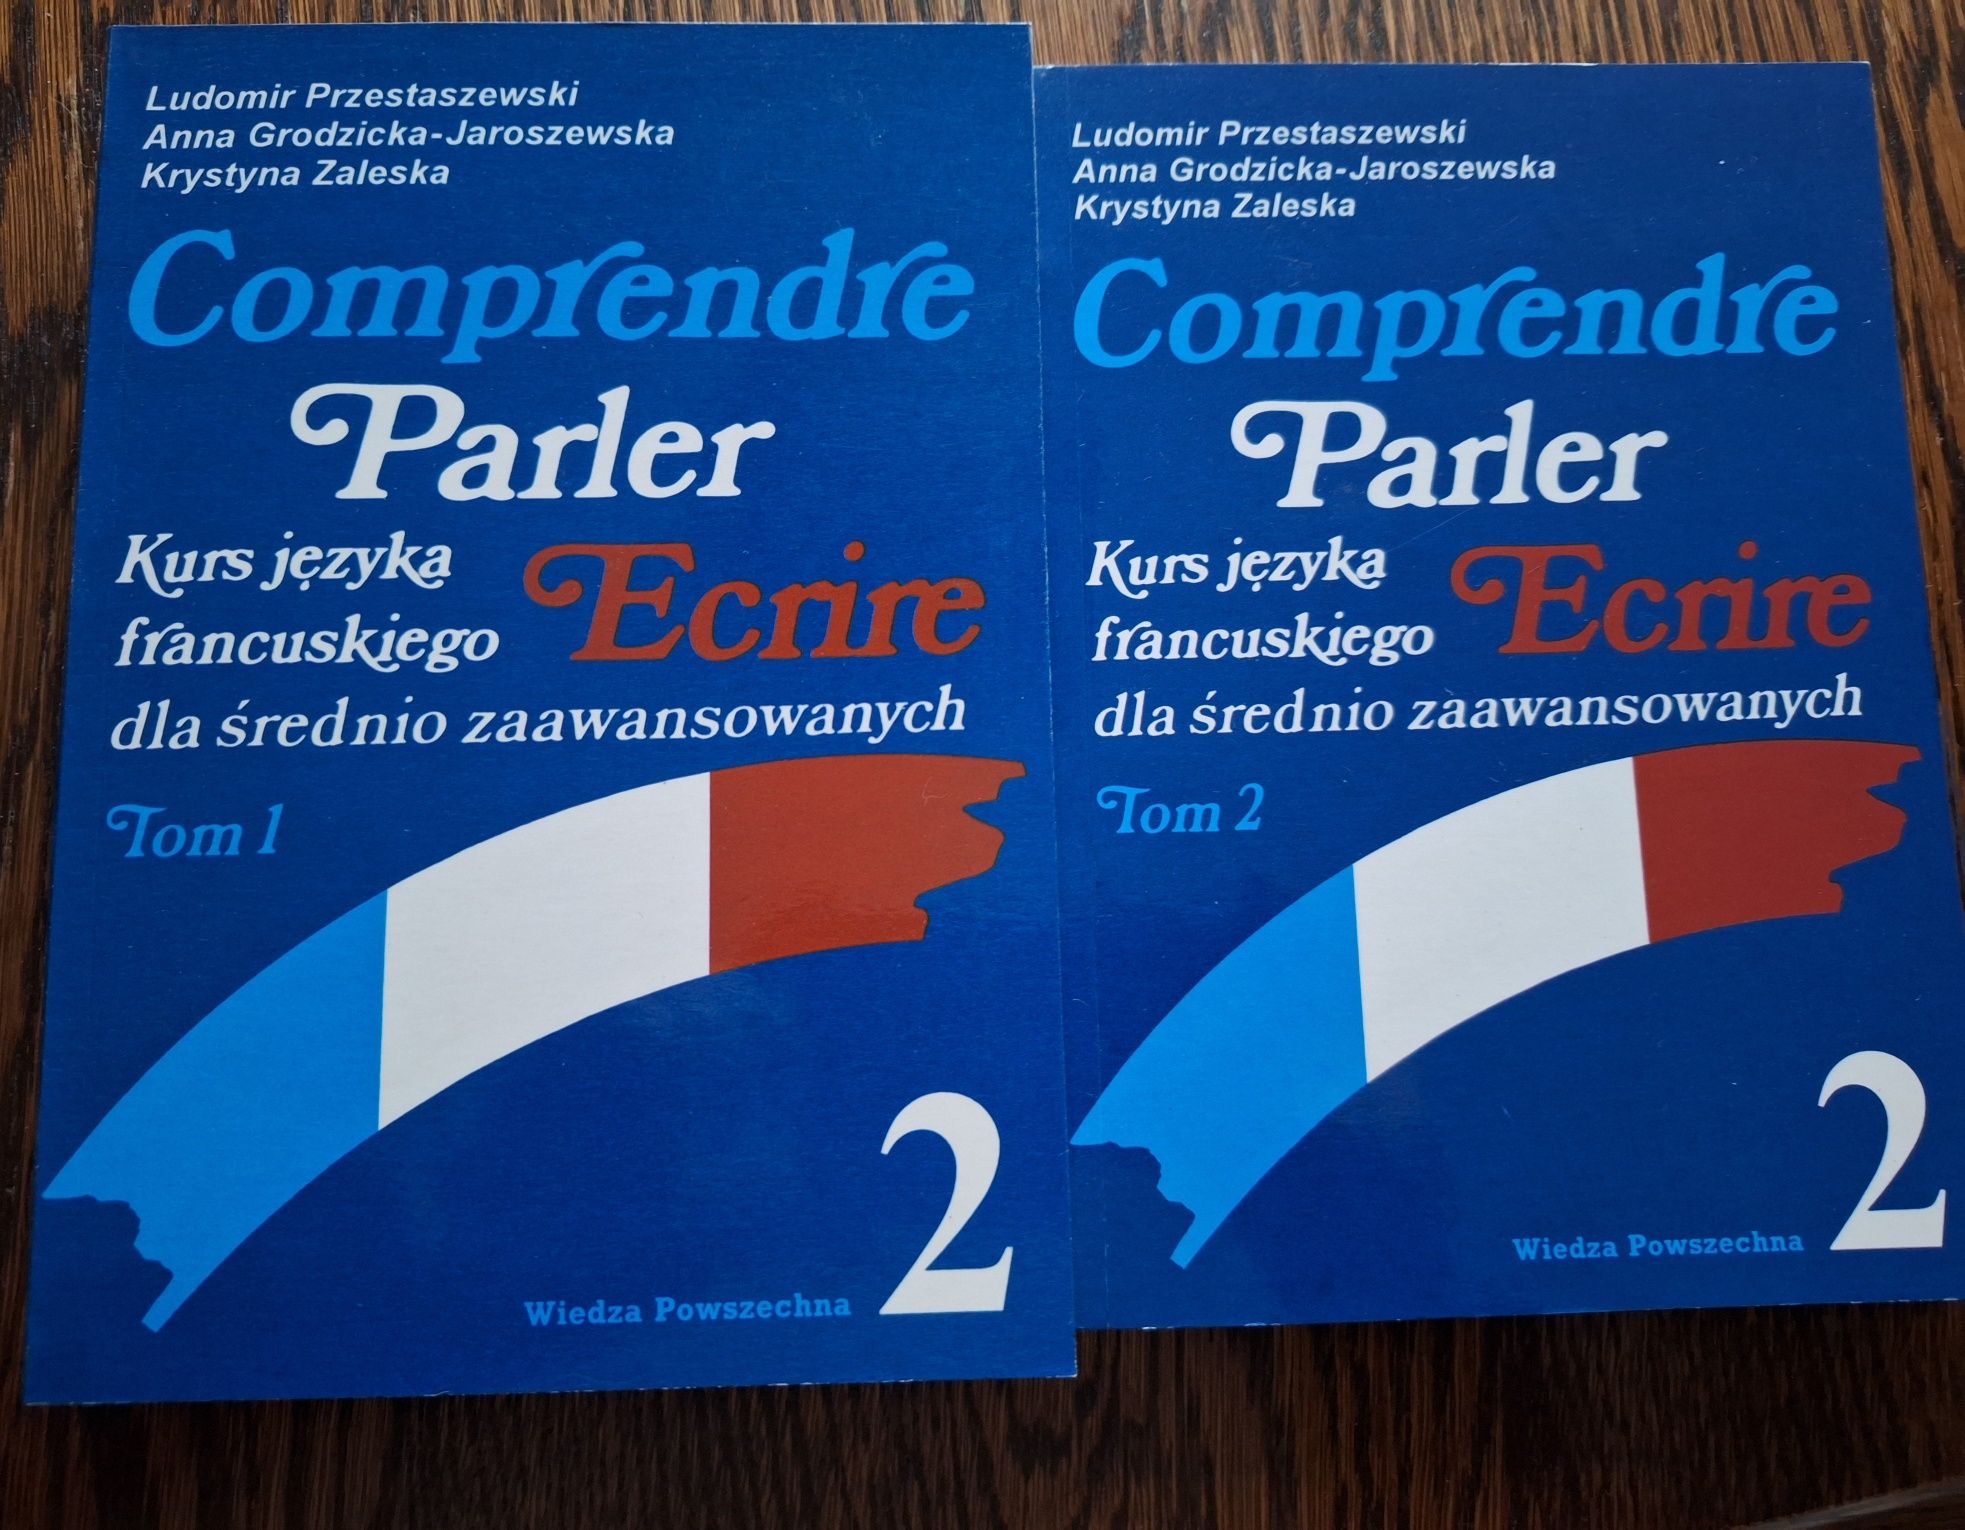 Kurs języka francuskiego dla średnio zaawansowanych "Comprendre Parler